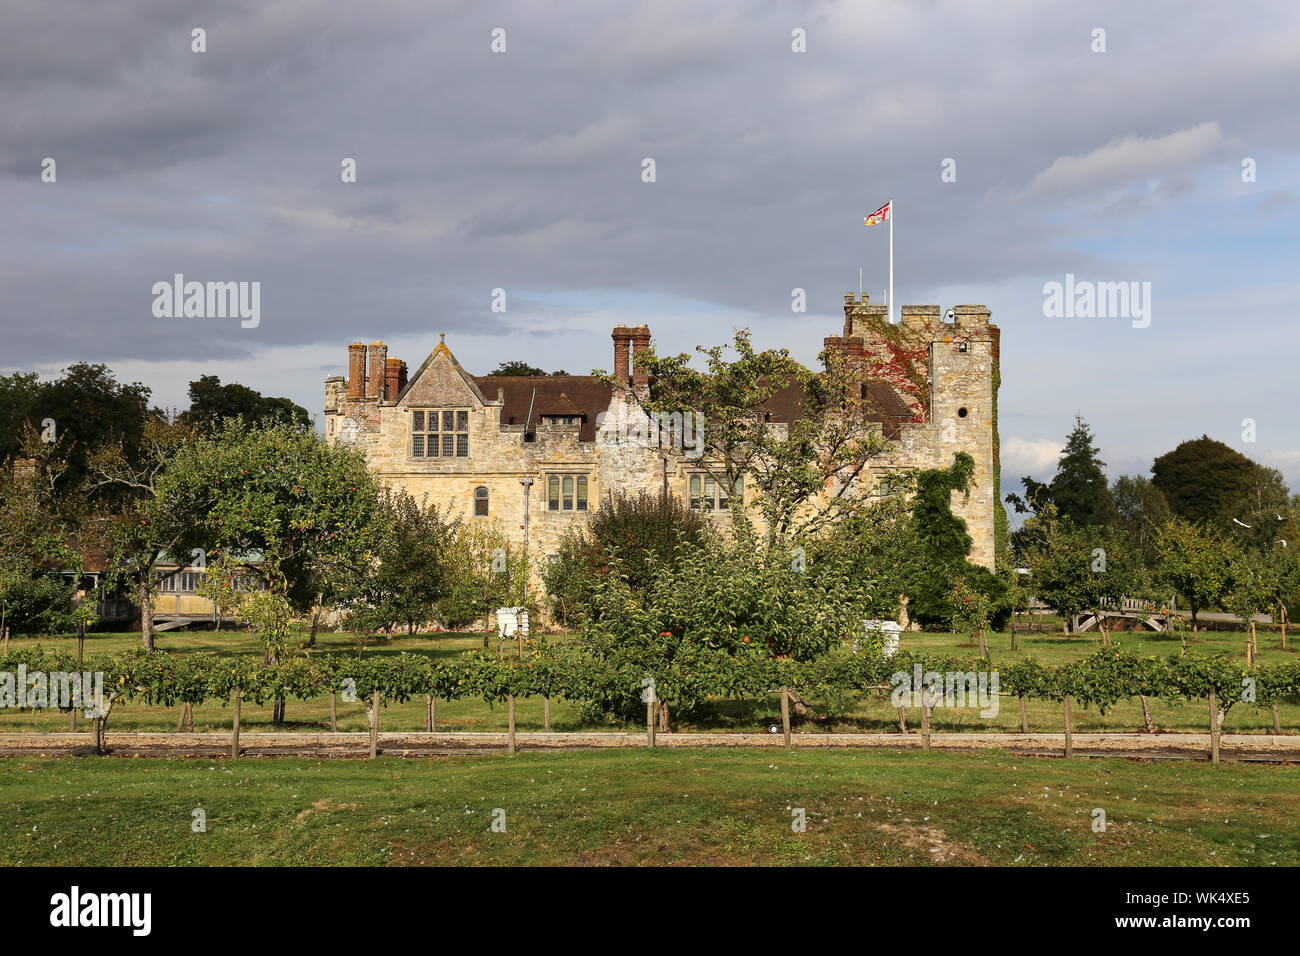 Le château de Hever, Hever, Edenbridge, Kent, Angleterre, Grande-Bretagne, Royaume-Uni, UK, Europe Banque D'Images